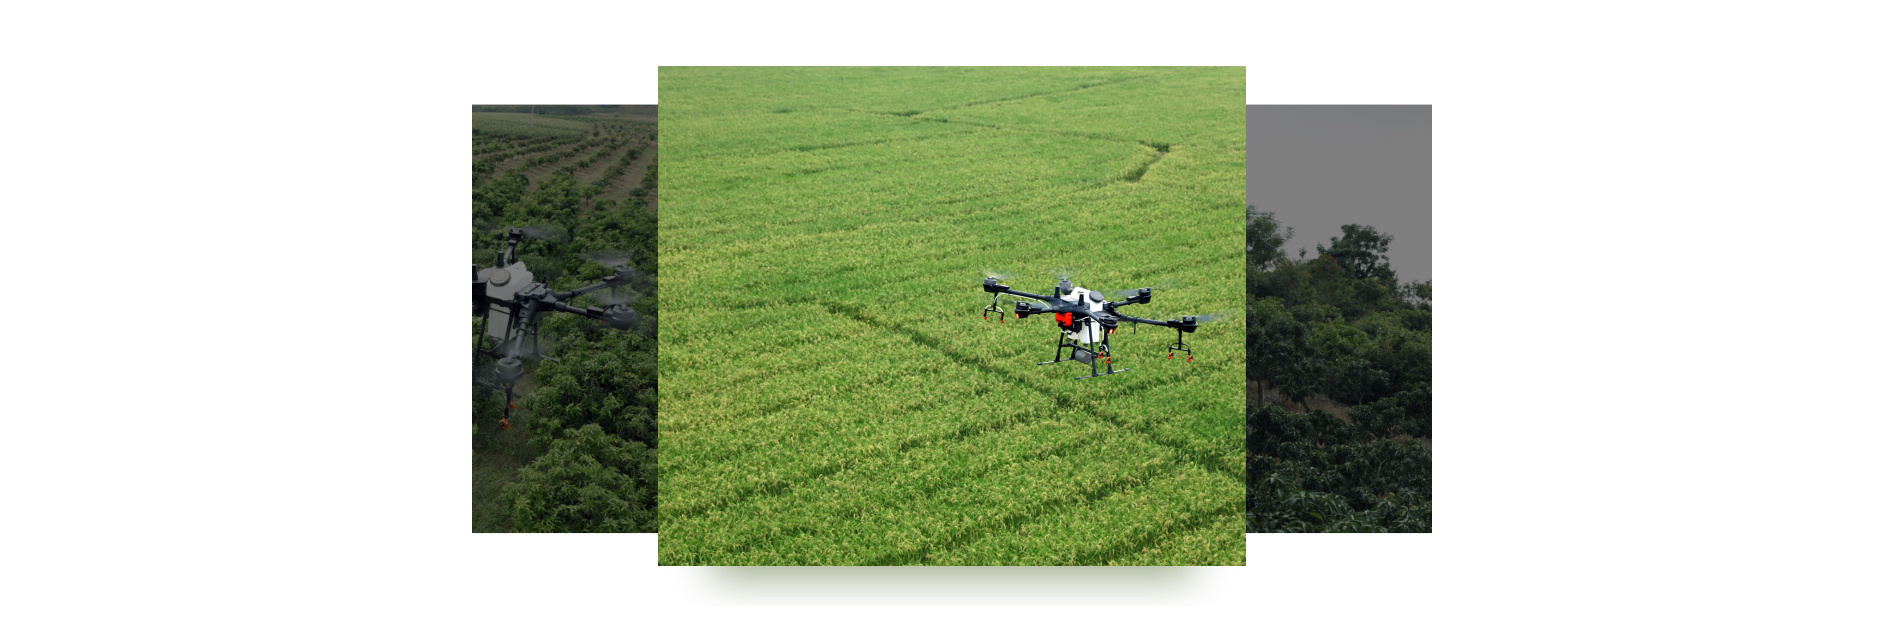 DJI Agras T16 Ziraii Drone